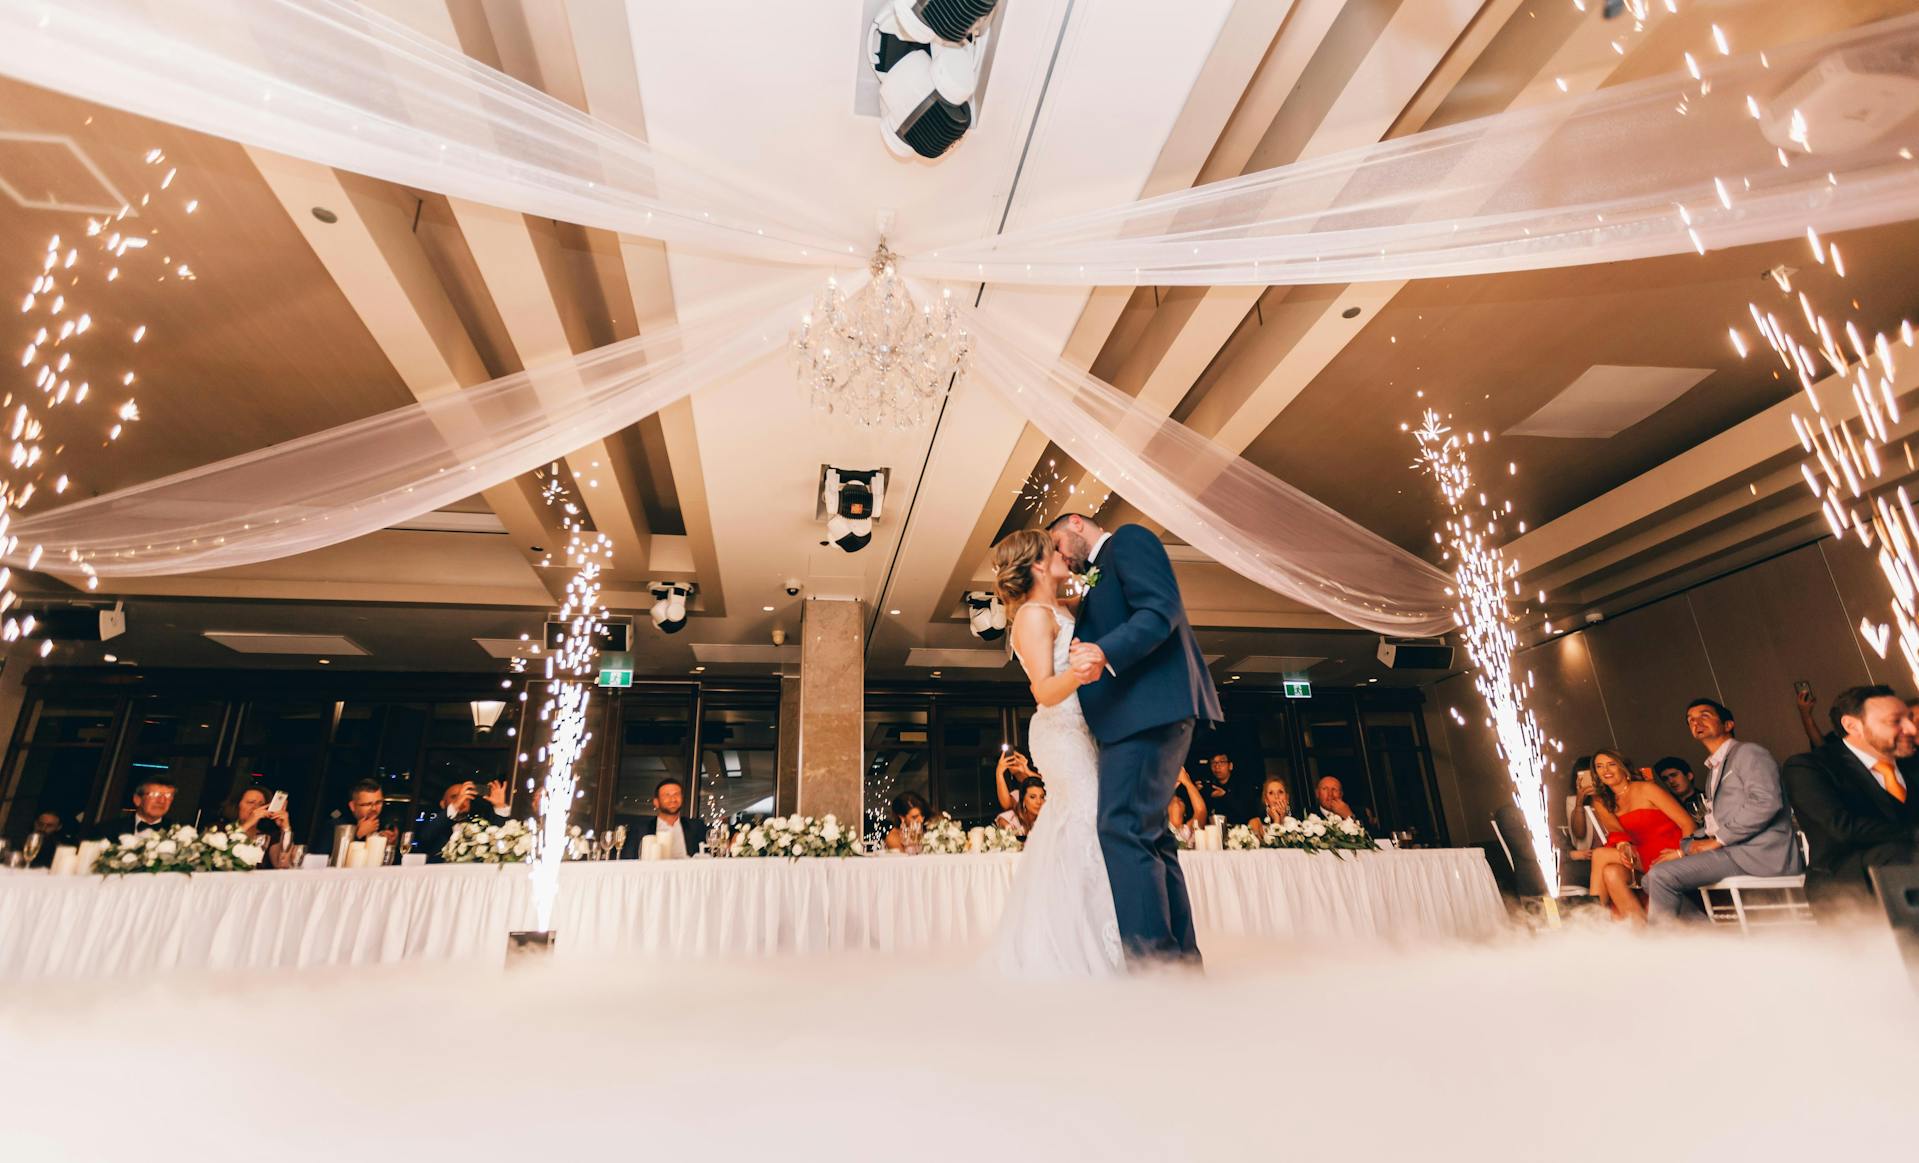 Pareja de novios bailando en la boda | Foto: Pexels